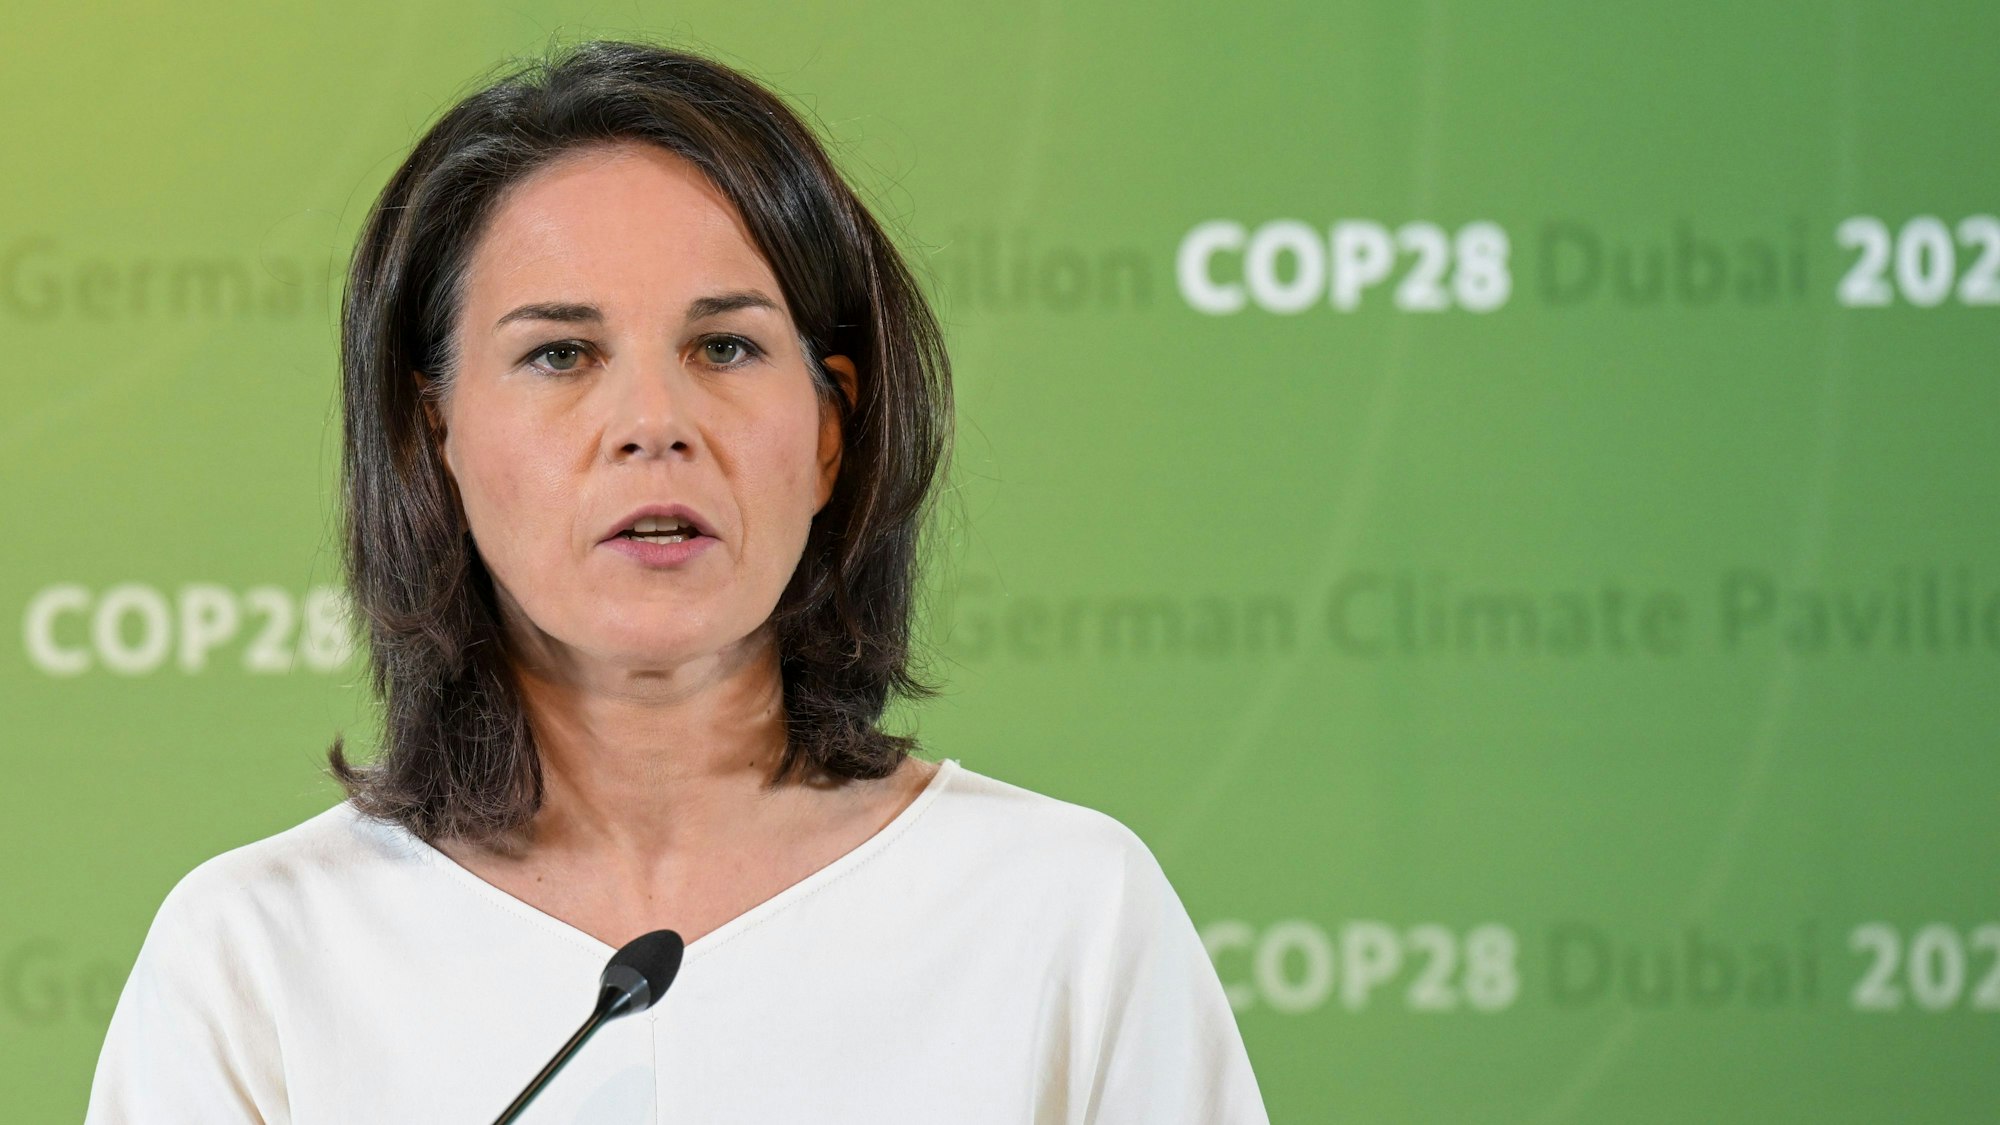 Annalena Baerbock (Bündnis 90 / Die Grünen) steht vor einer grünen Wand mit dem sich wiederholenden Aufdruck „German Climate Pavilion COP28 Dubai 2023“.